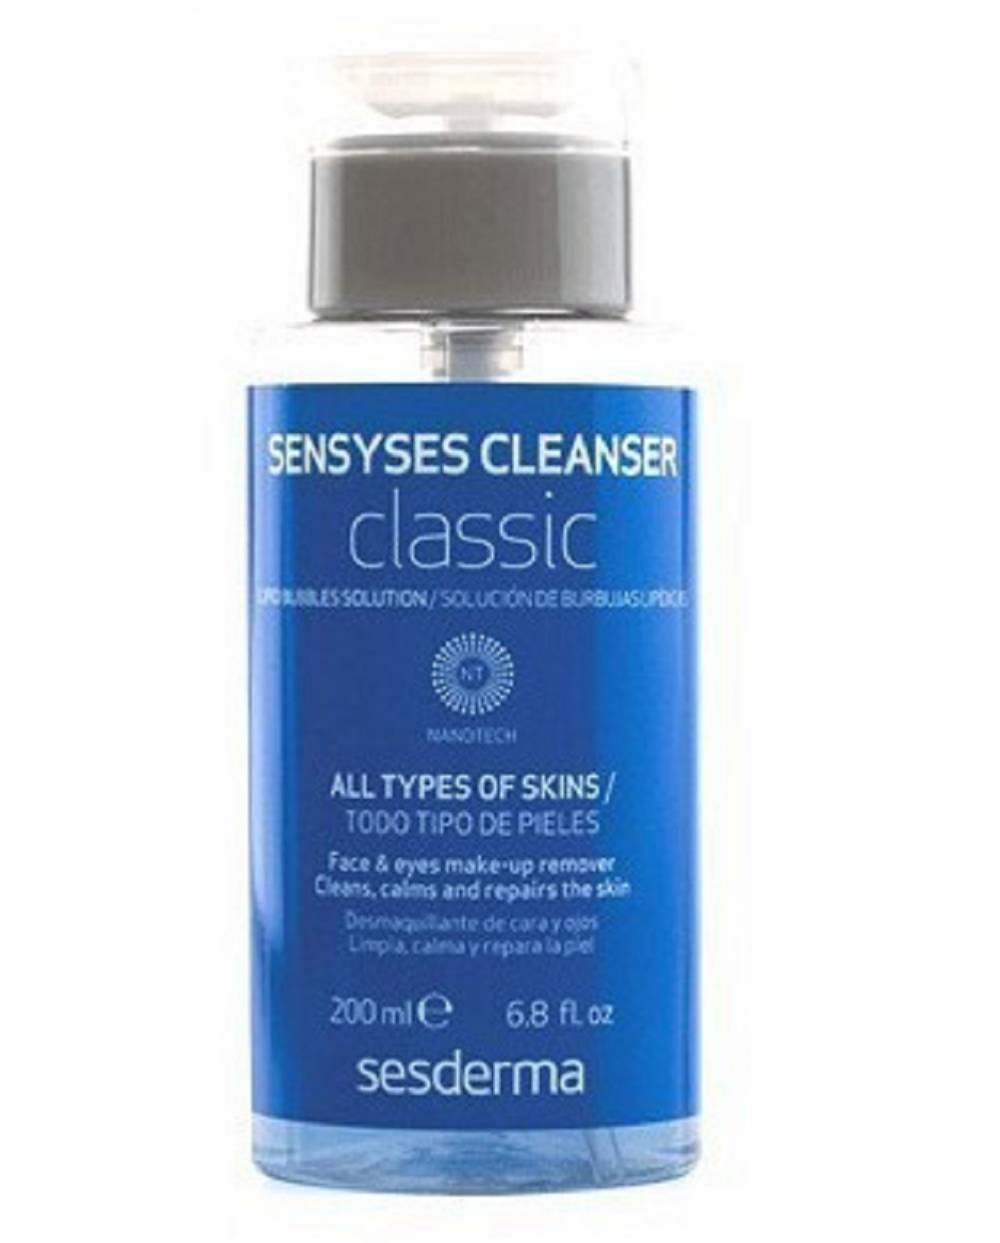 Sensyses Cleanser Classic Sesderma - 200 ml